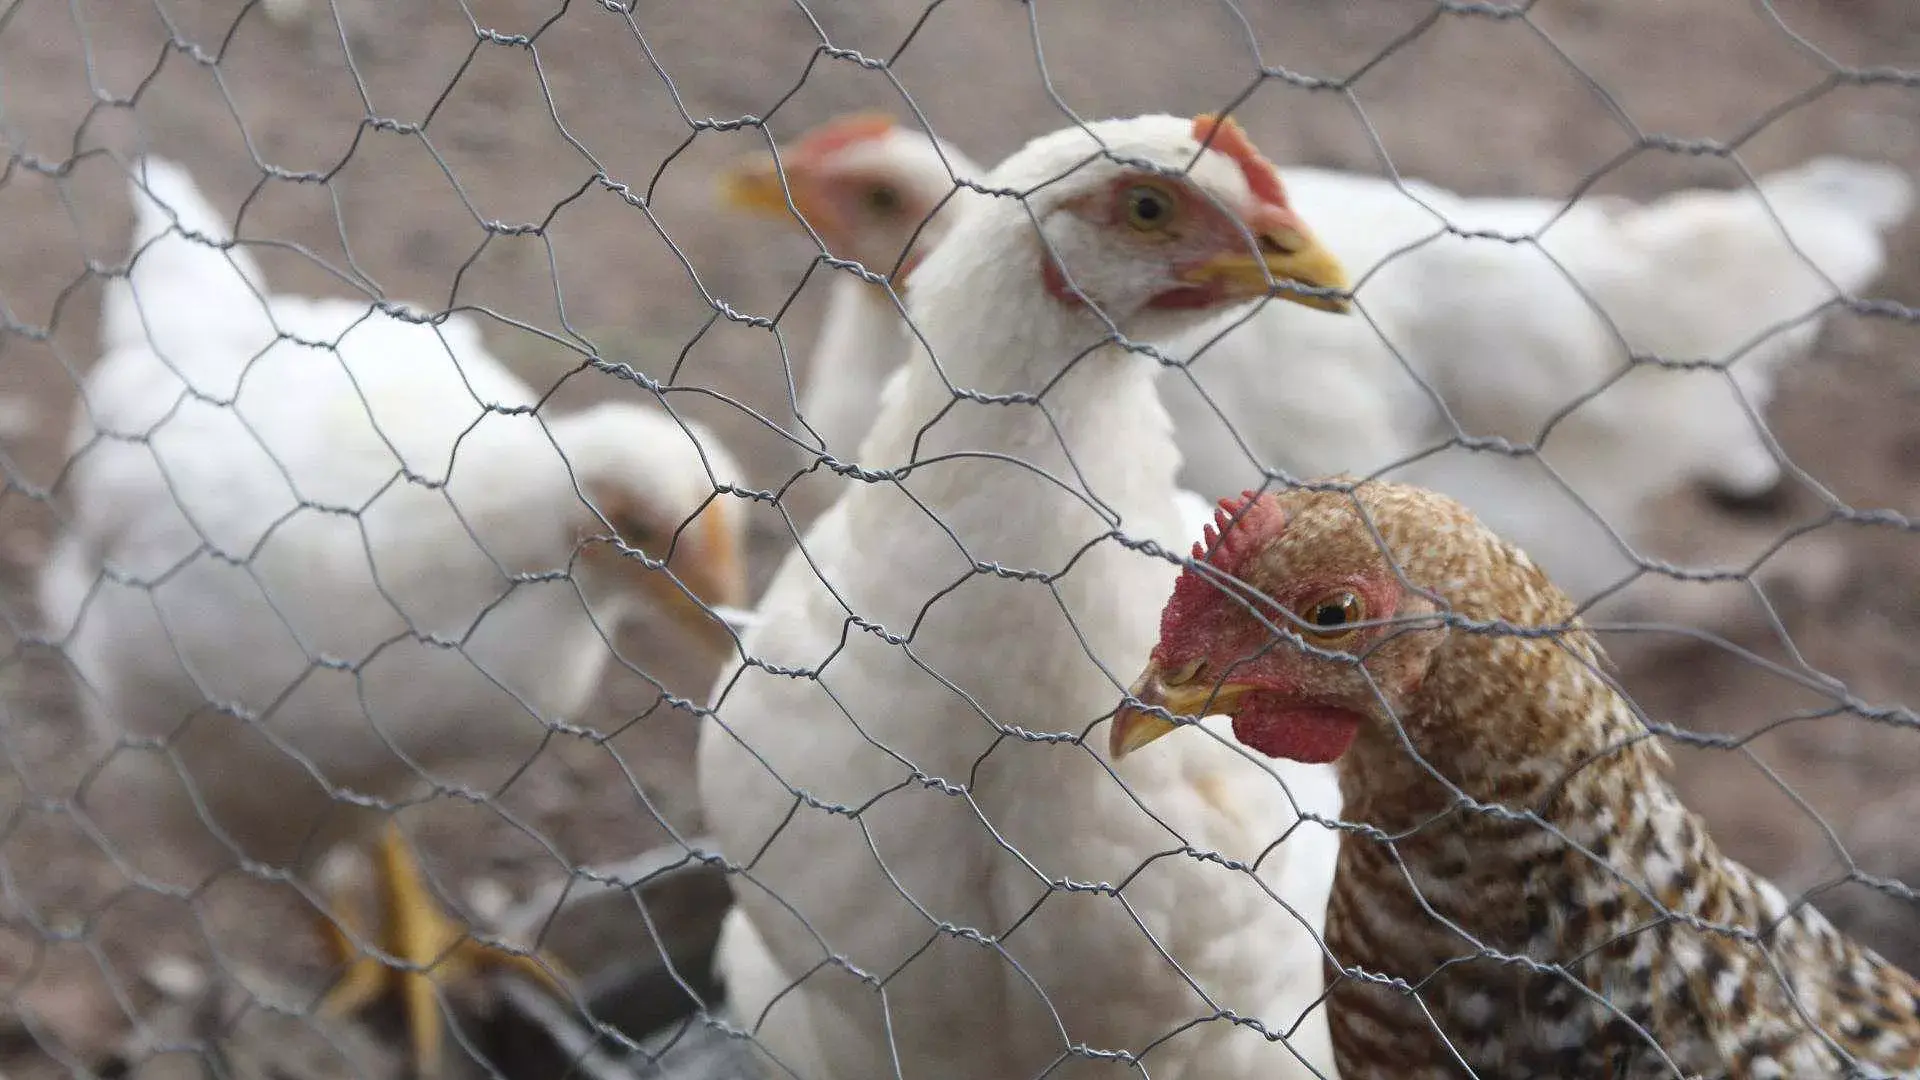 Primera muerte por gripe aviar: OMS pide estar alerta aunque el riesgo es bajo